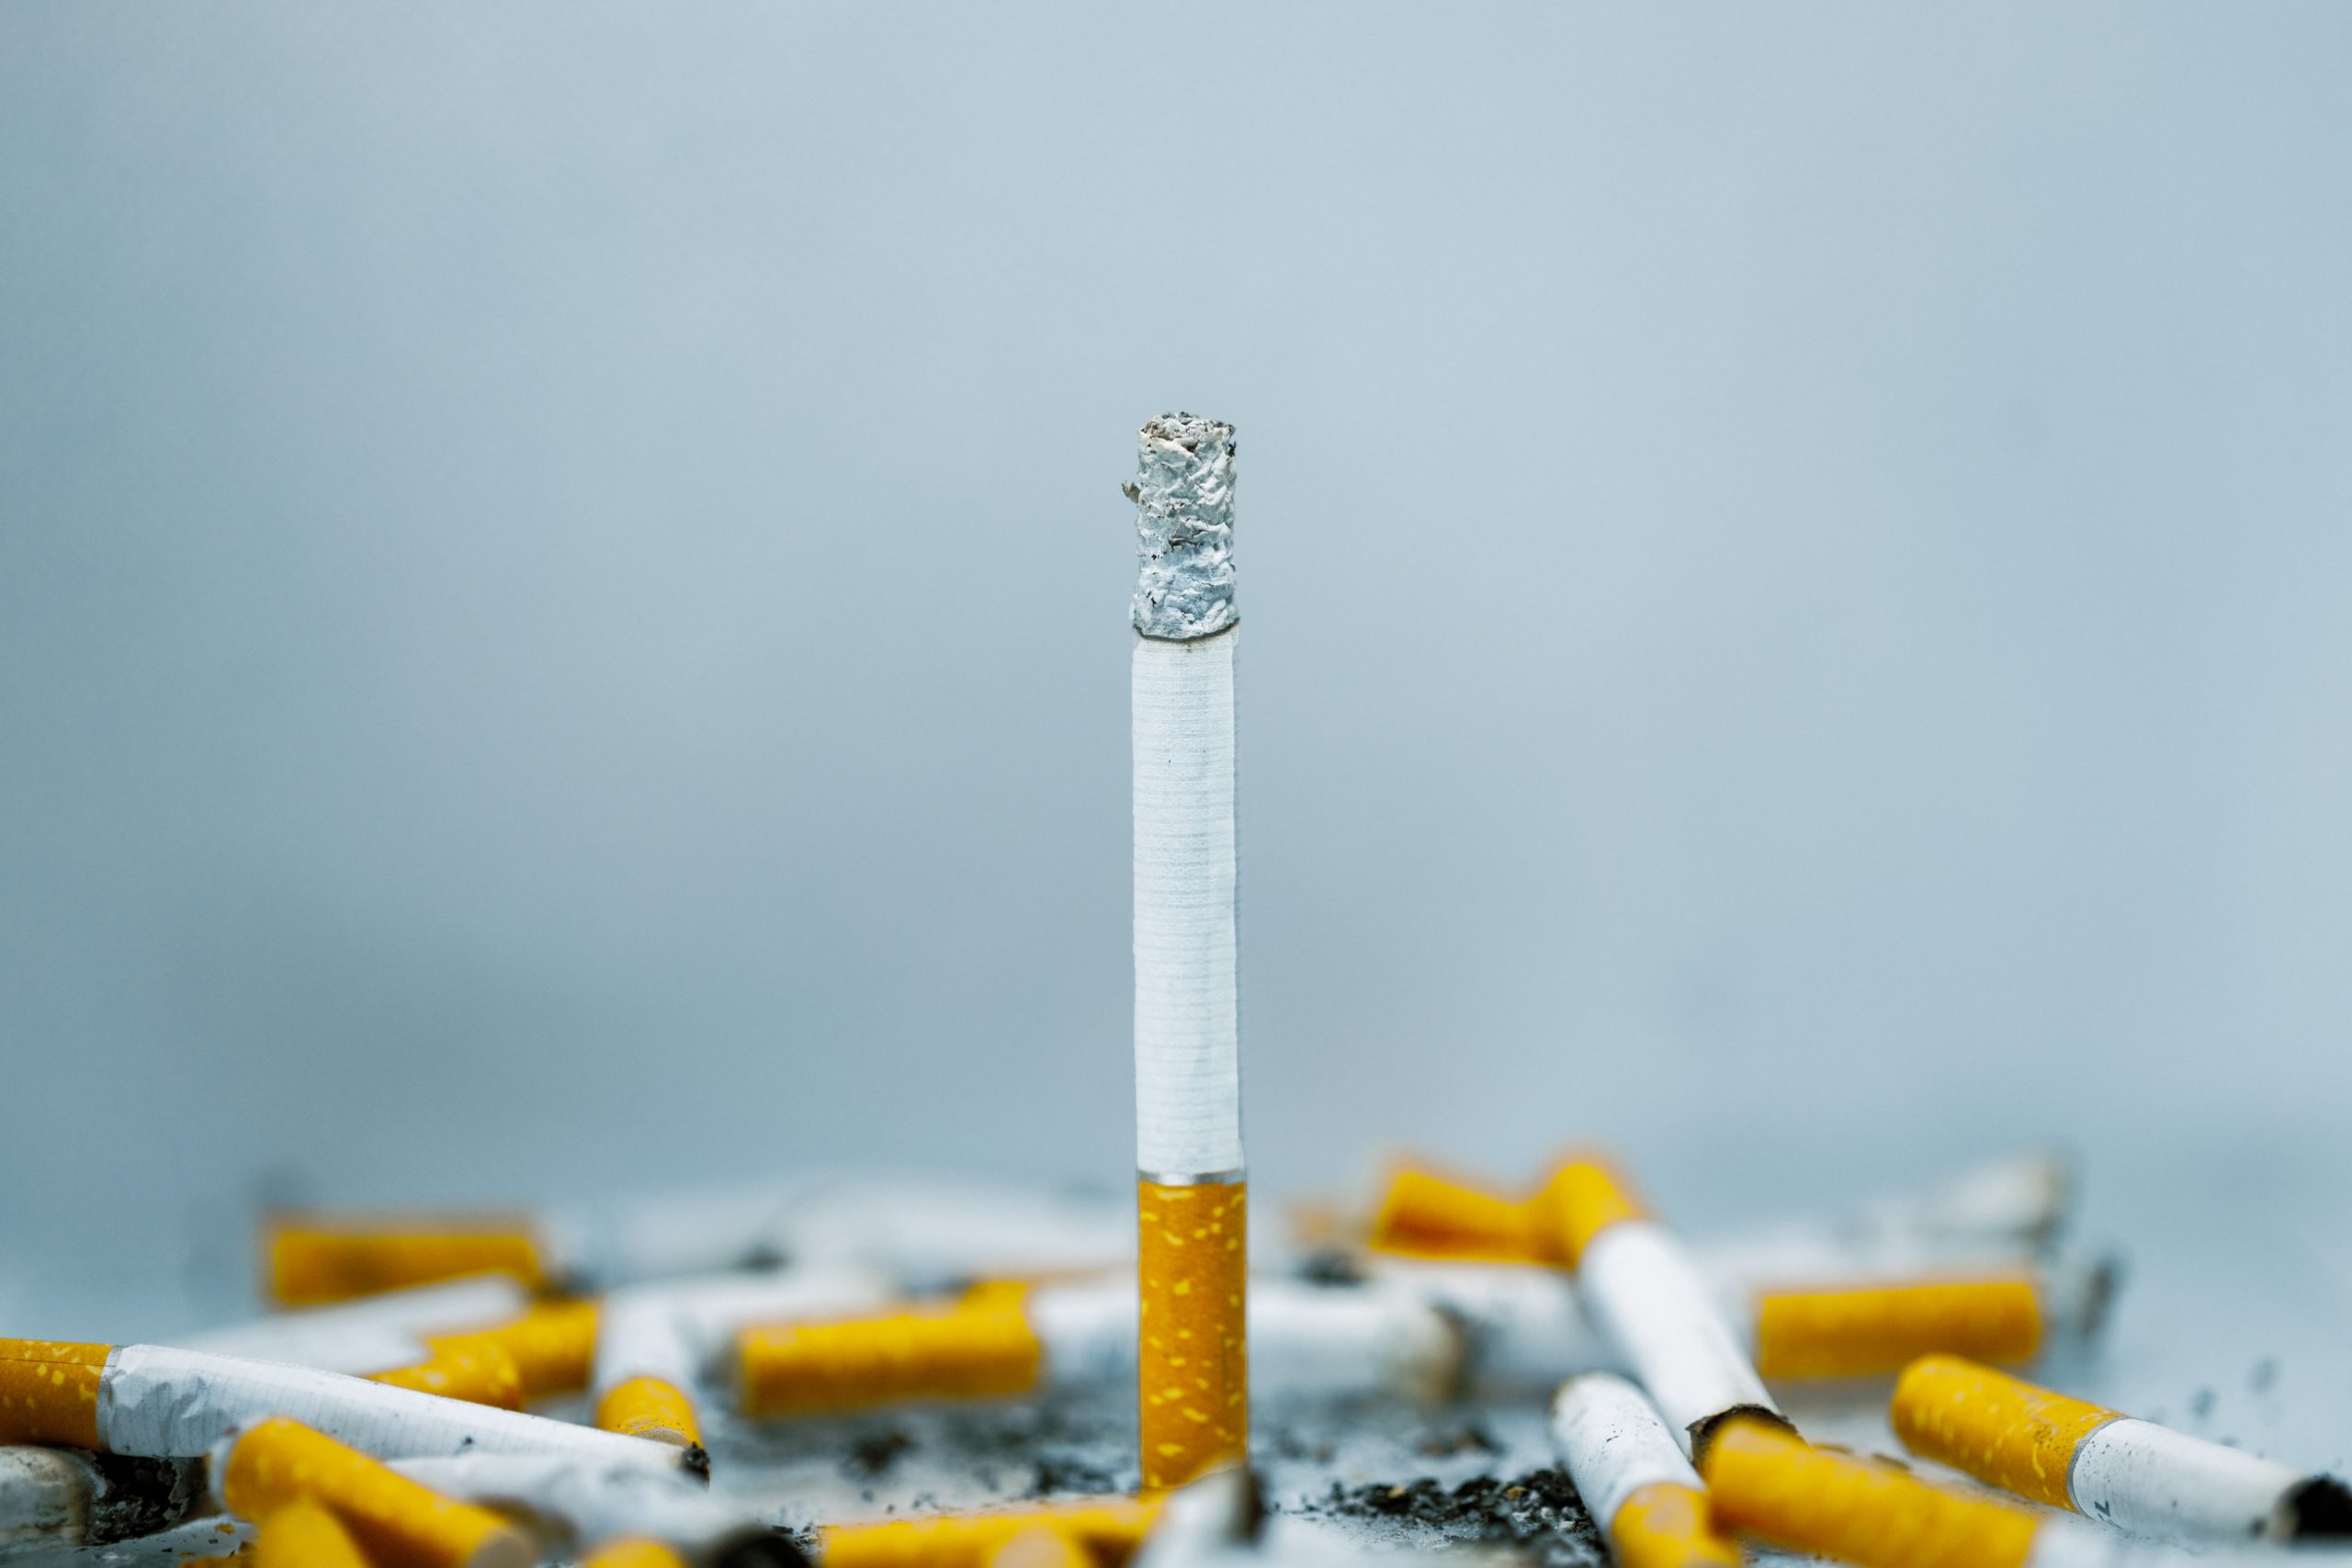 Industria del tabaco contribuye al calentamiento global. Foto de Unsplash